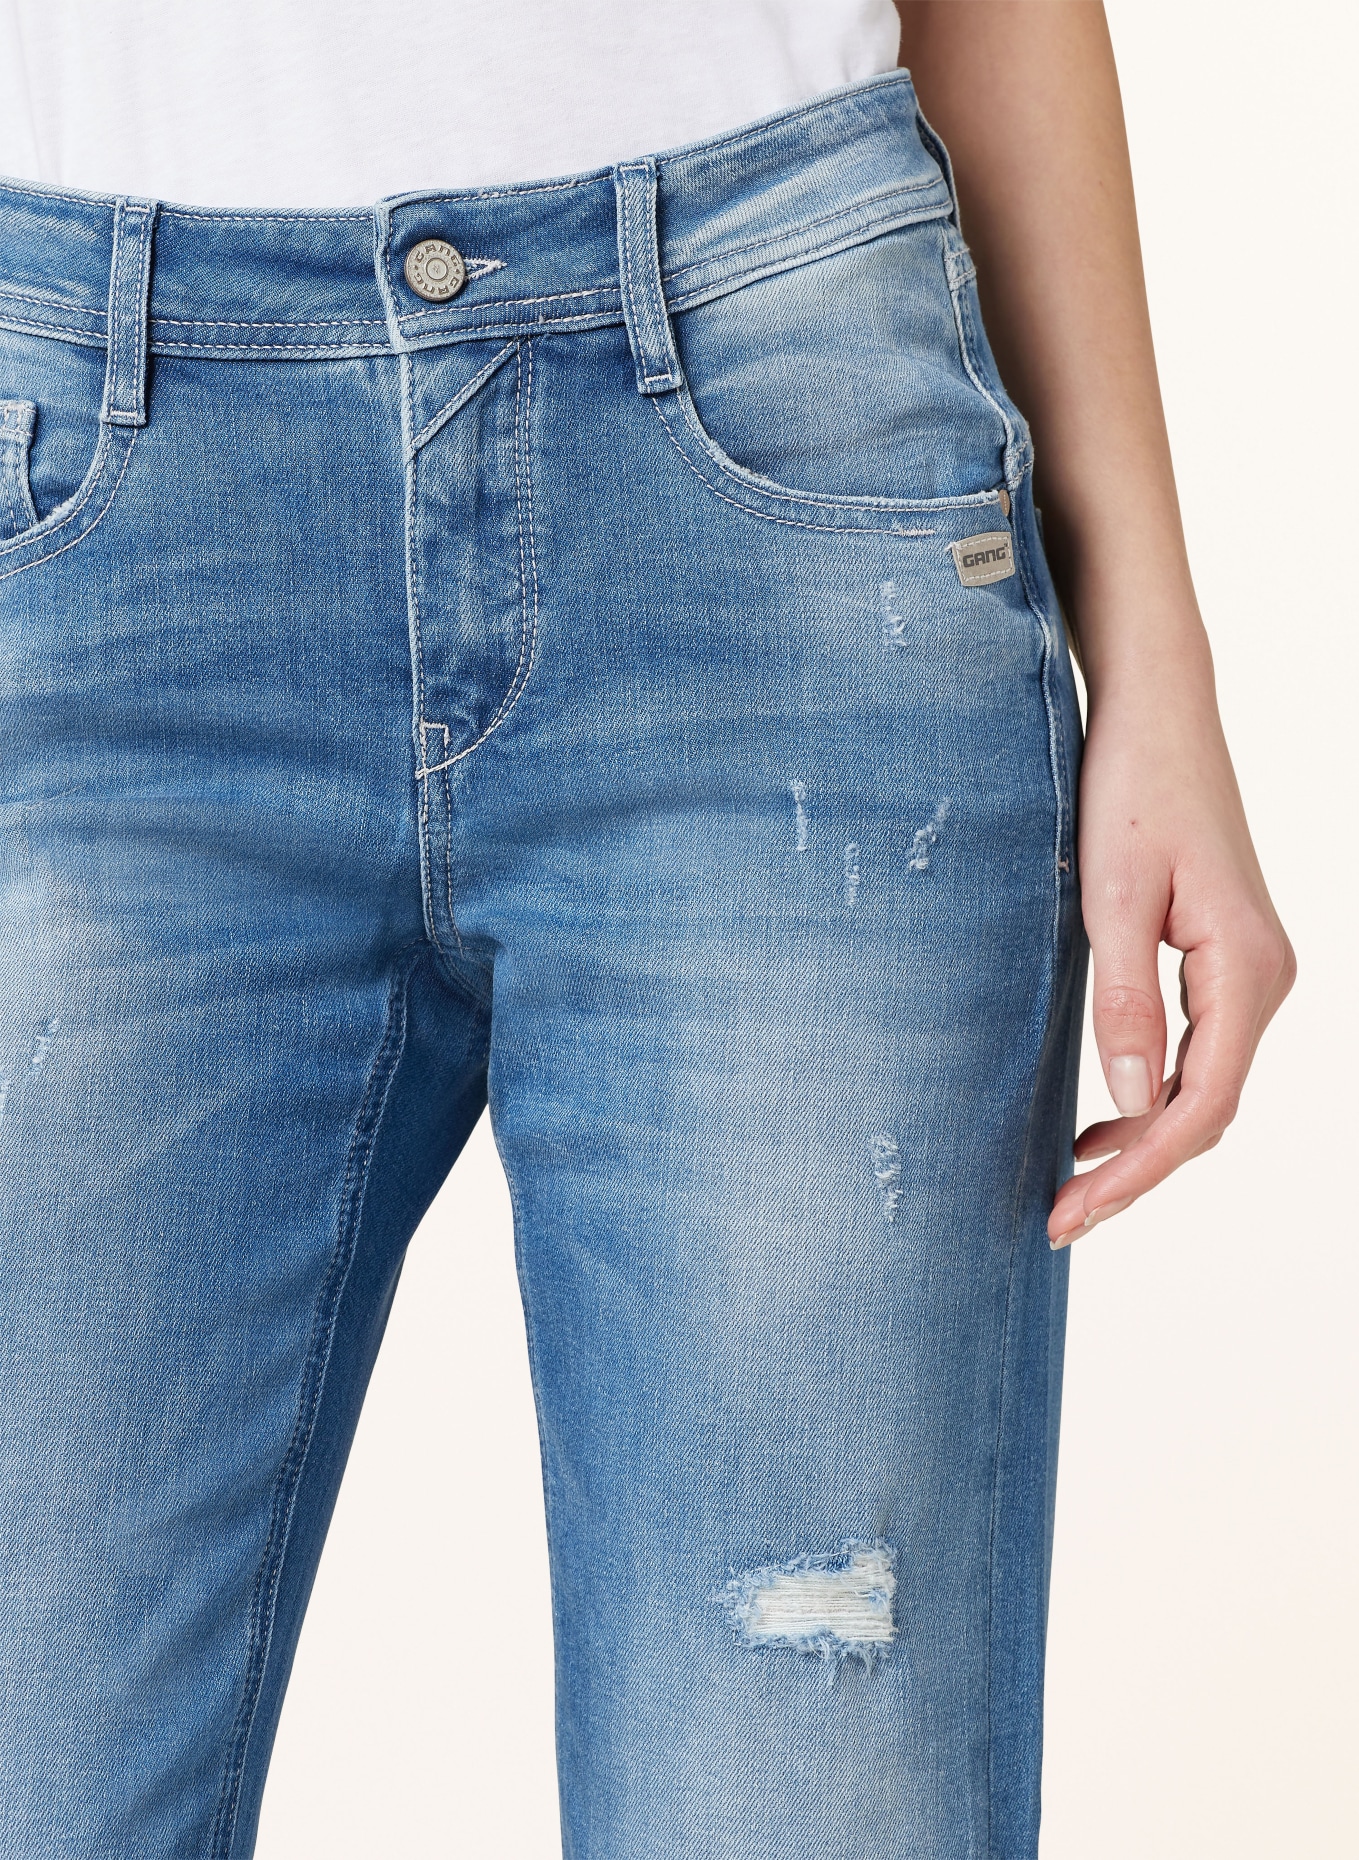 GANG Jeans AMELIE, Color: 7699 lovly destoxed (Image 5)